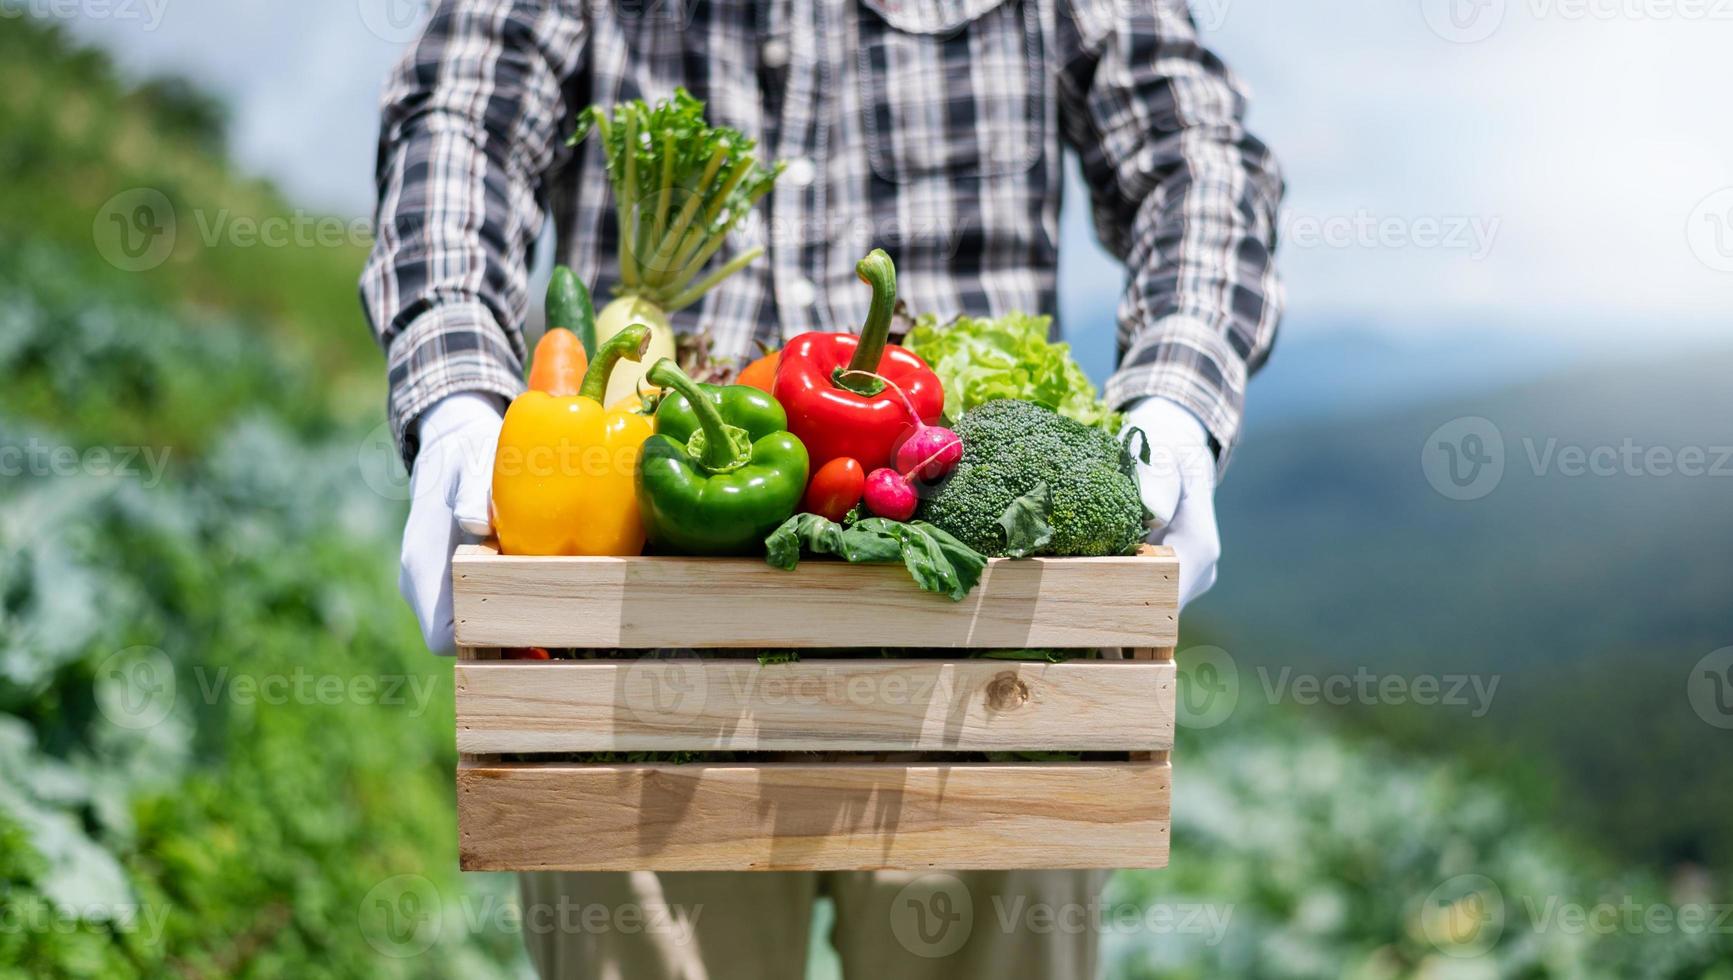 Landwirt Mann mit Holzkiste voller frischem Rohgemüse. Korb mit frischem Bio-Gemüse und Paprika in den Händen. foto